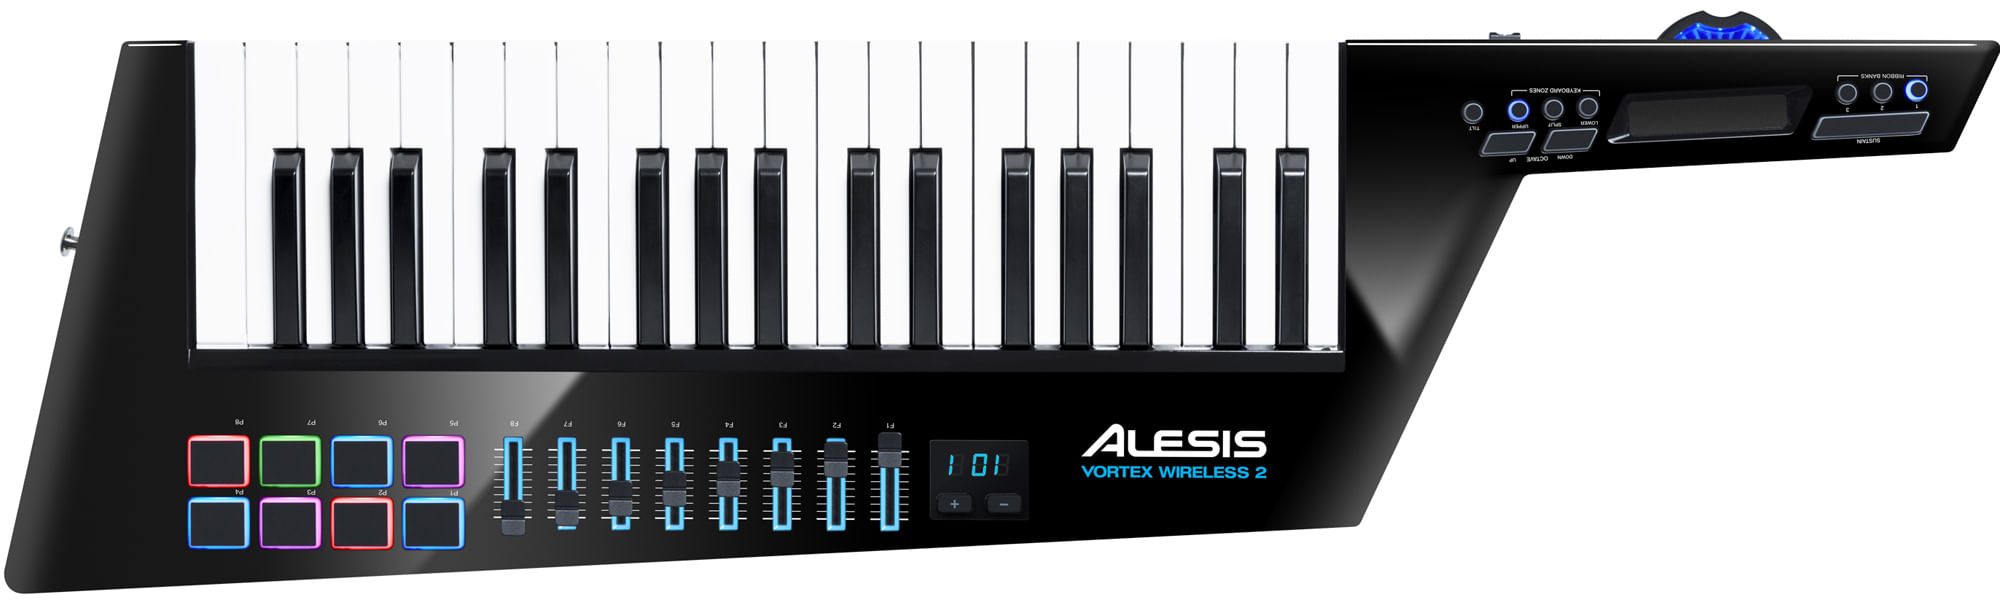 Alesis Vortex Wireless 2 Keytar Controller